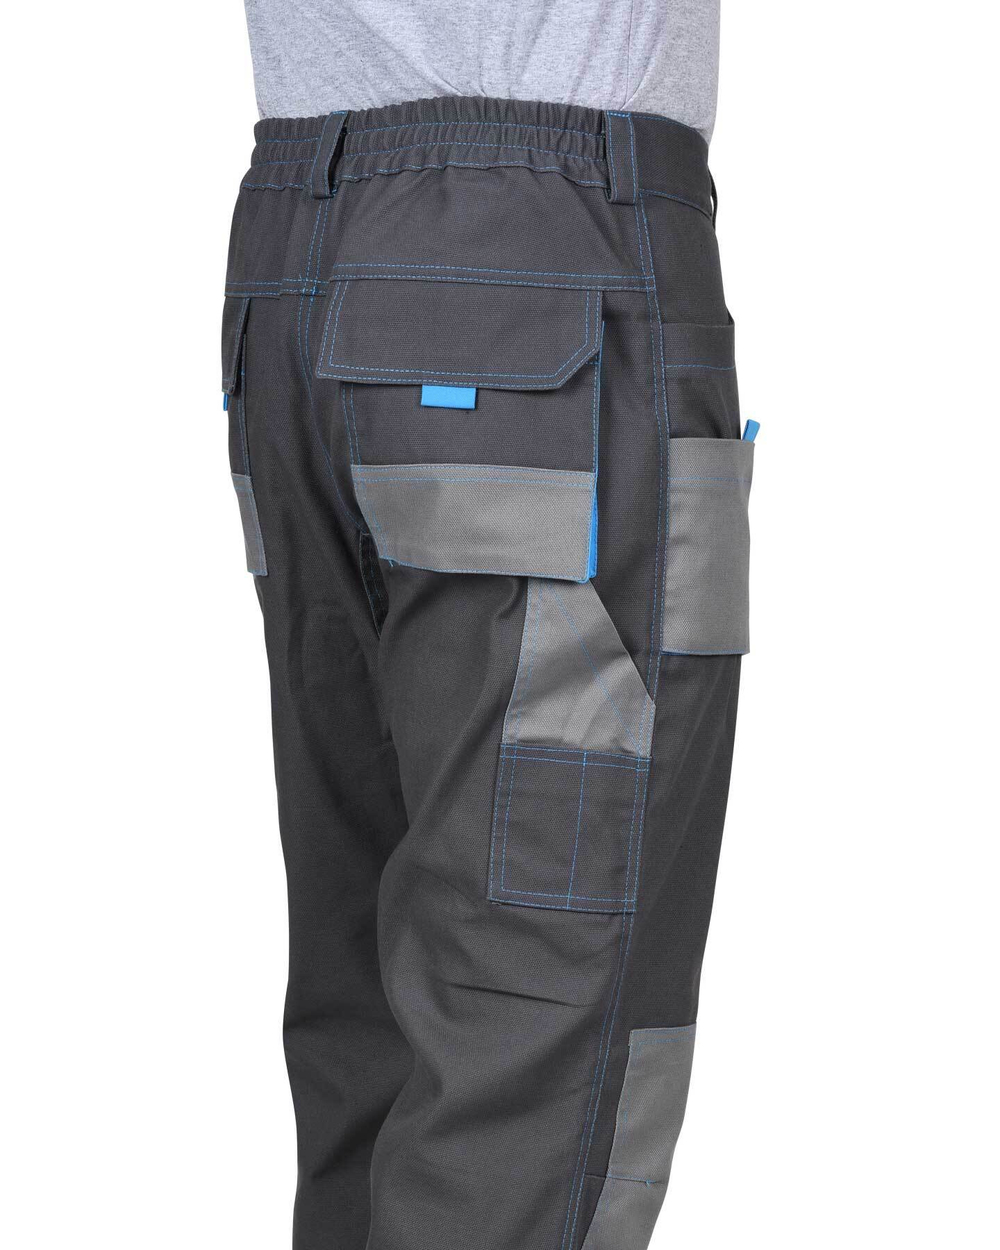 Костюм Двин (куртка, брюки) т.серый со средне серым и голубой отделкой